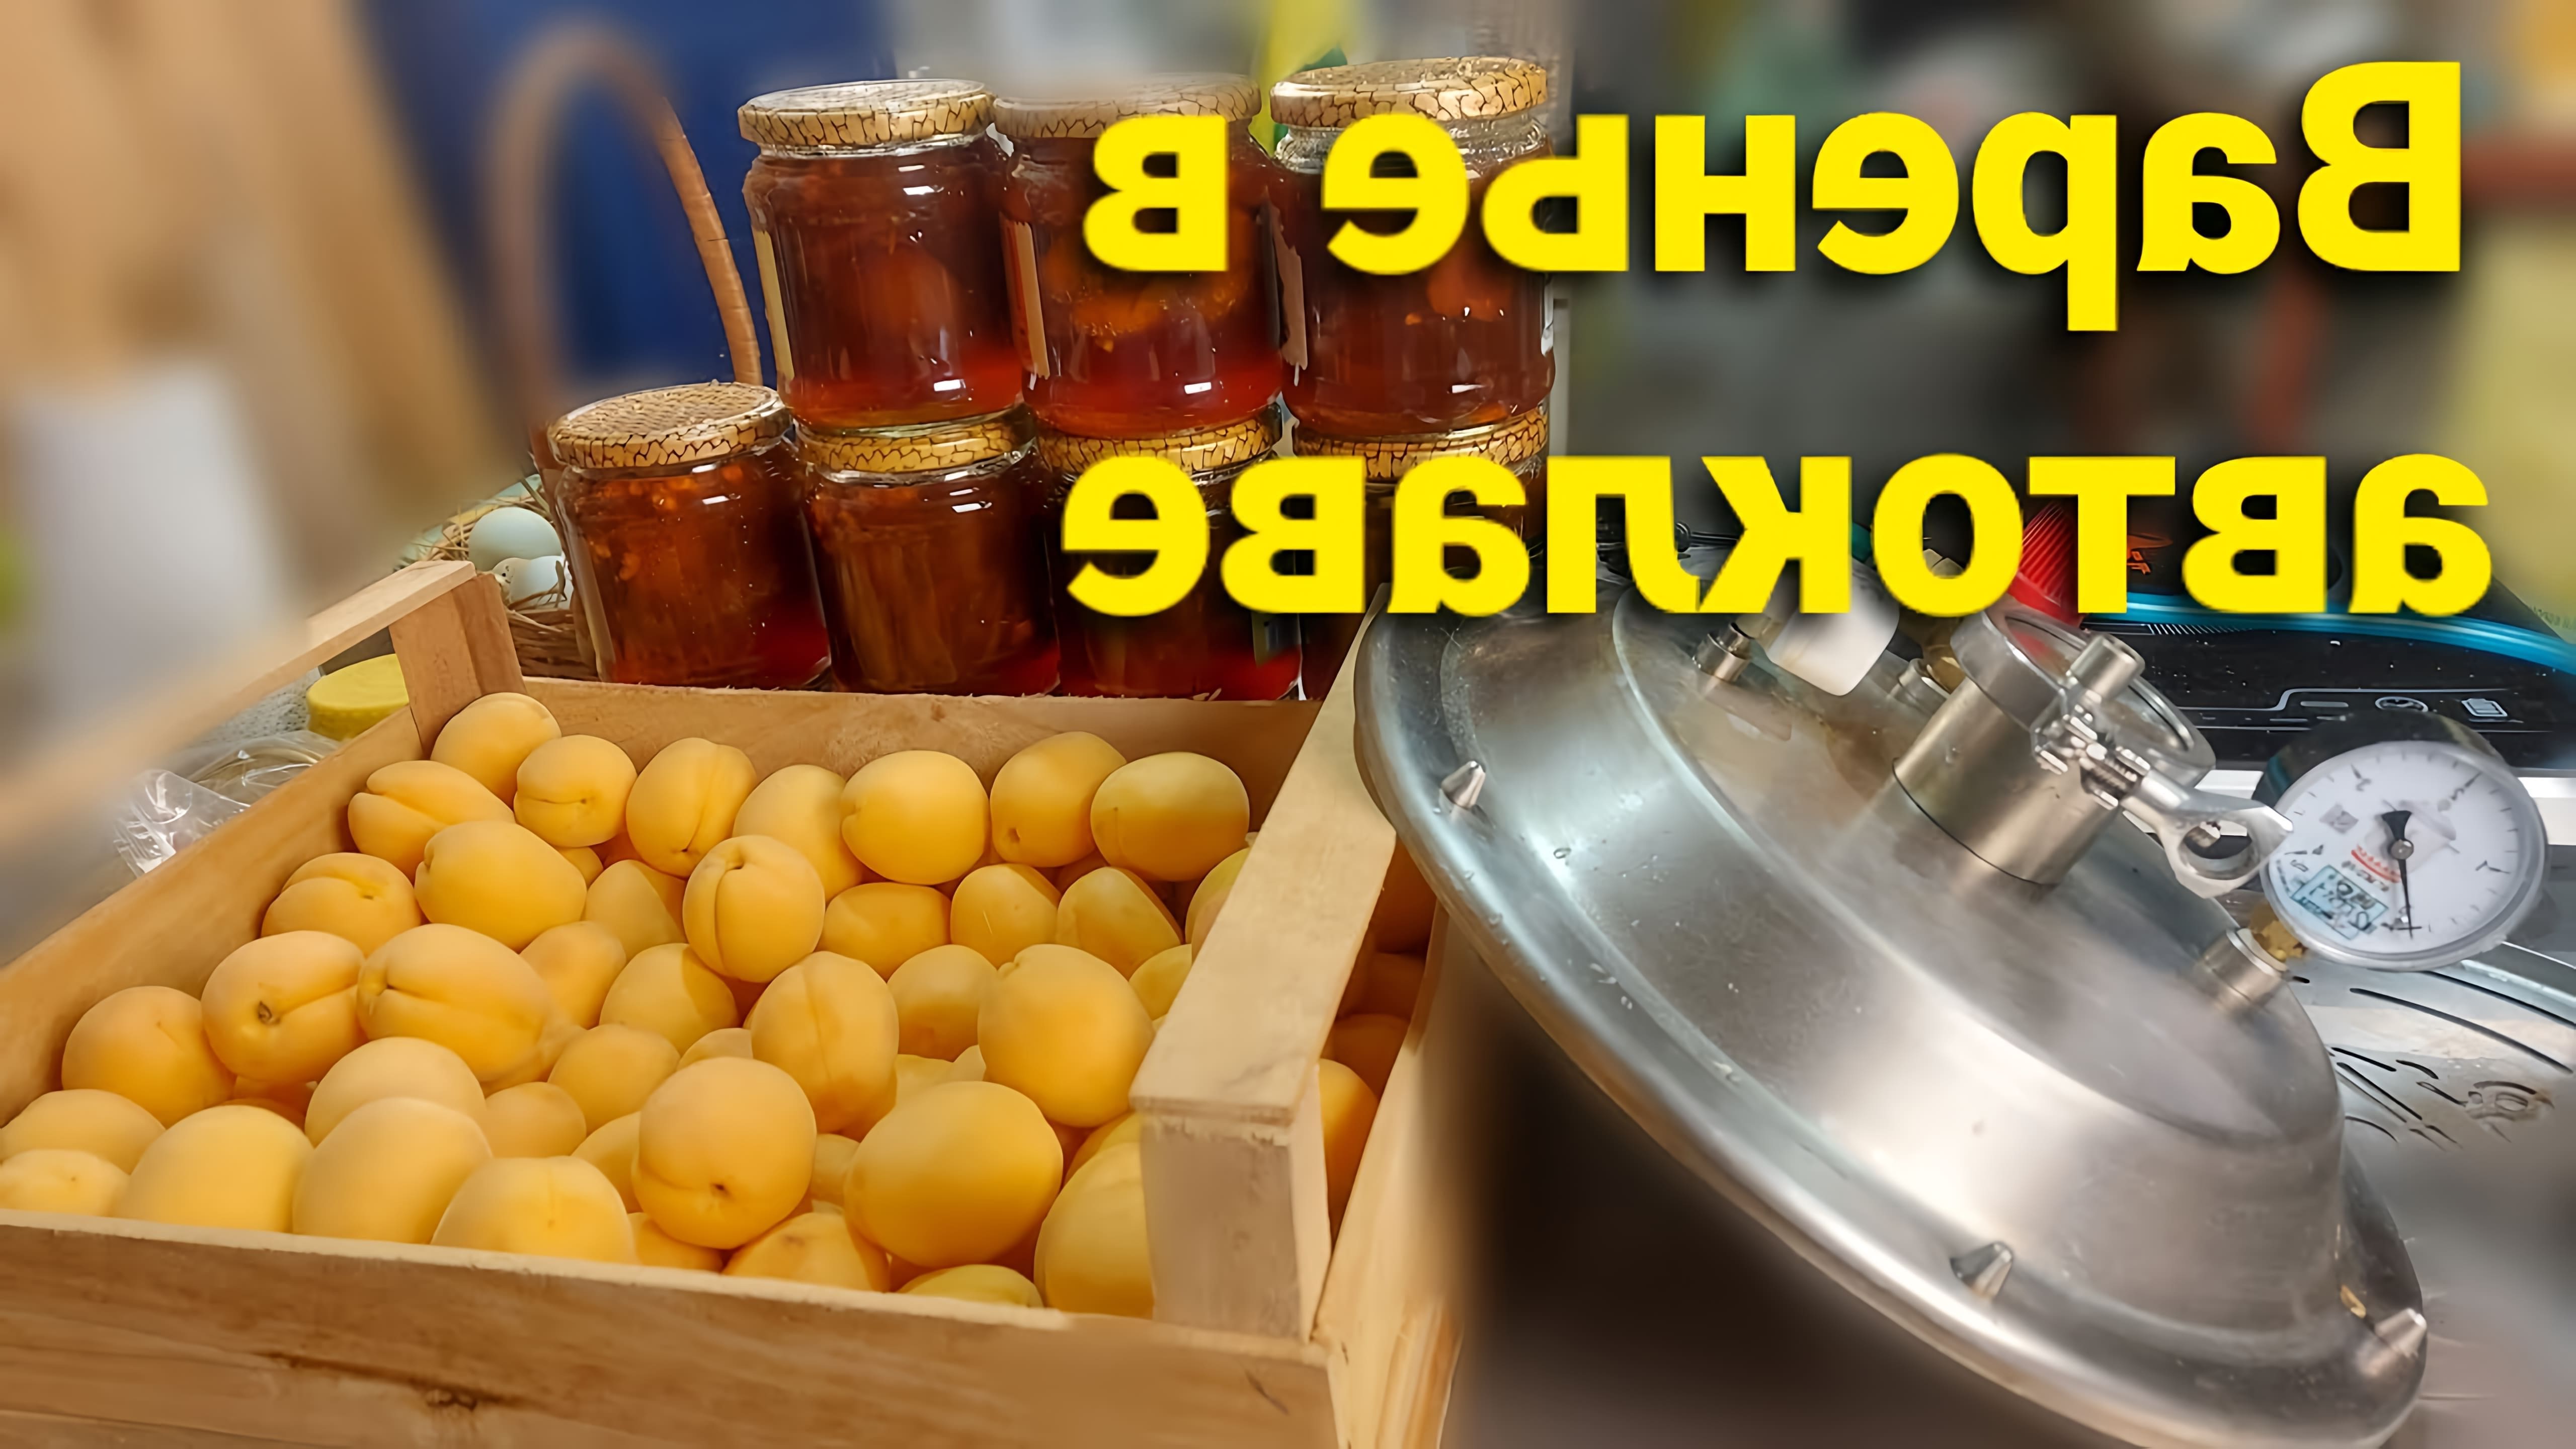 В этом видео демонстрируется процесс приготовления абрикосового варенья